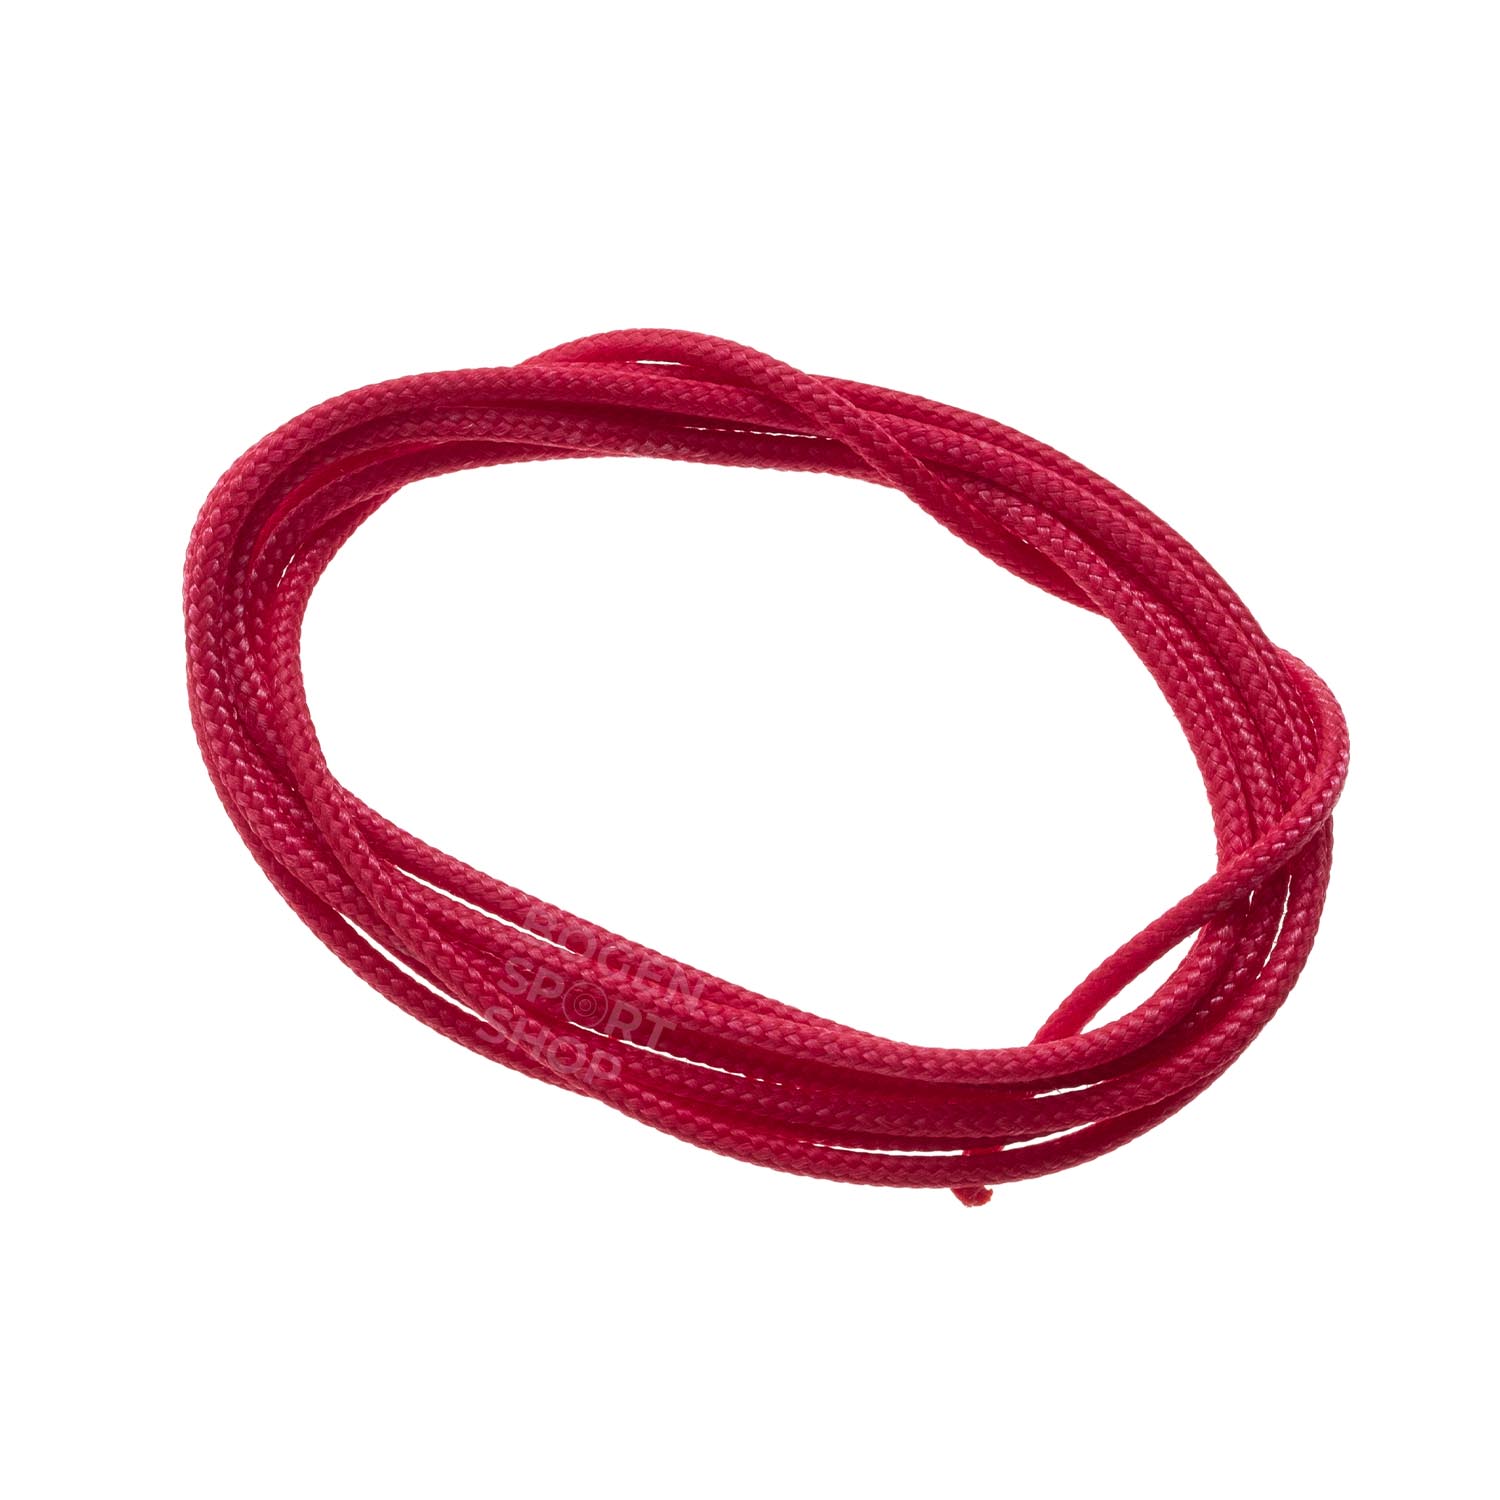  Buy BCY D-Loop Rope .060 / 1.6 mm Red Braided